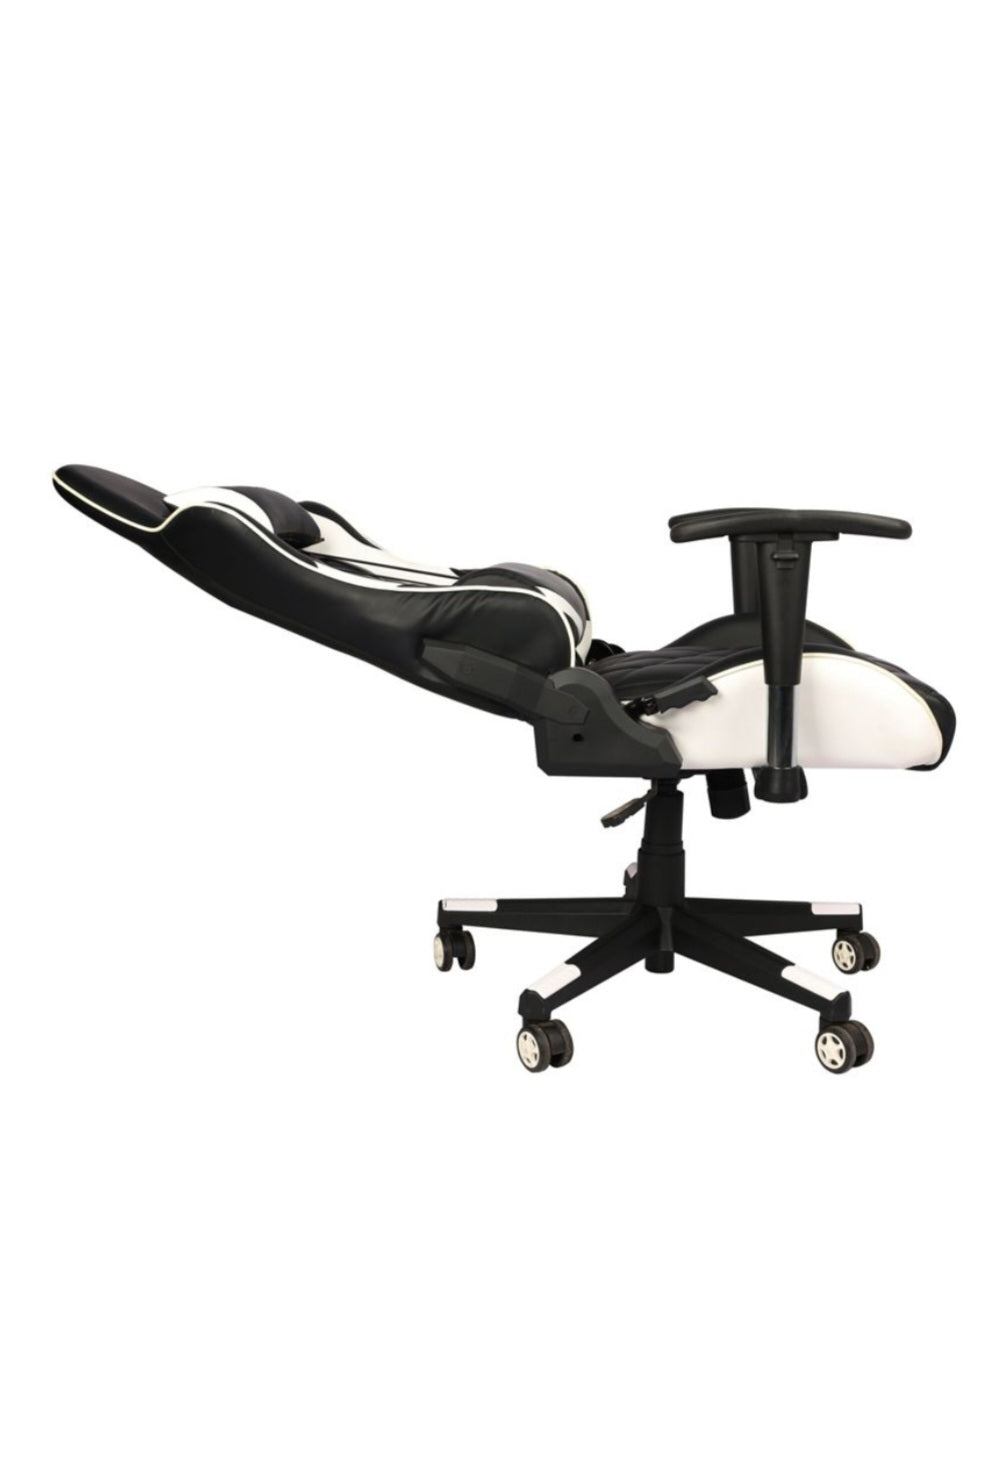 Gearar Gaming Chair